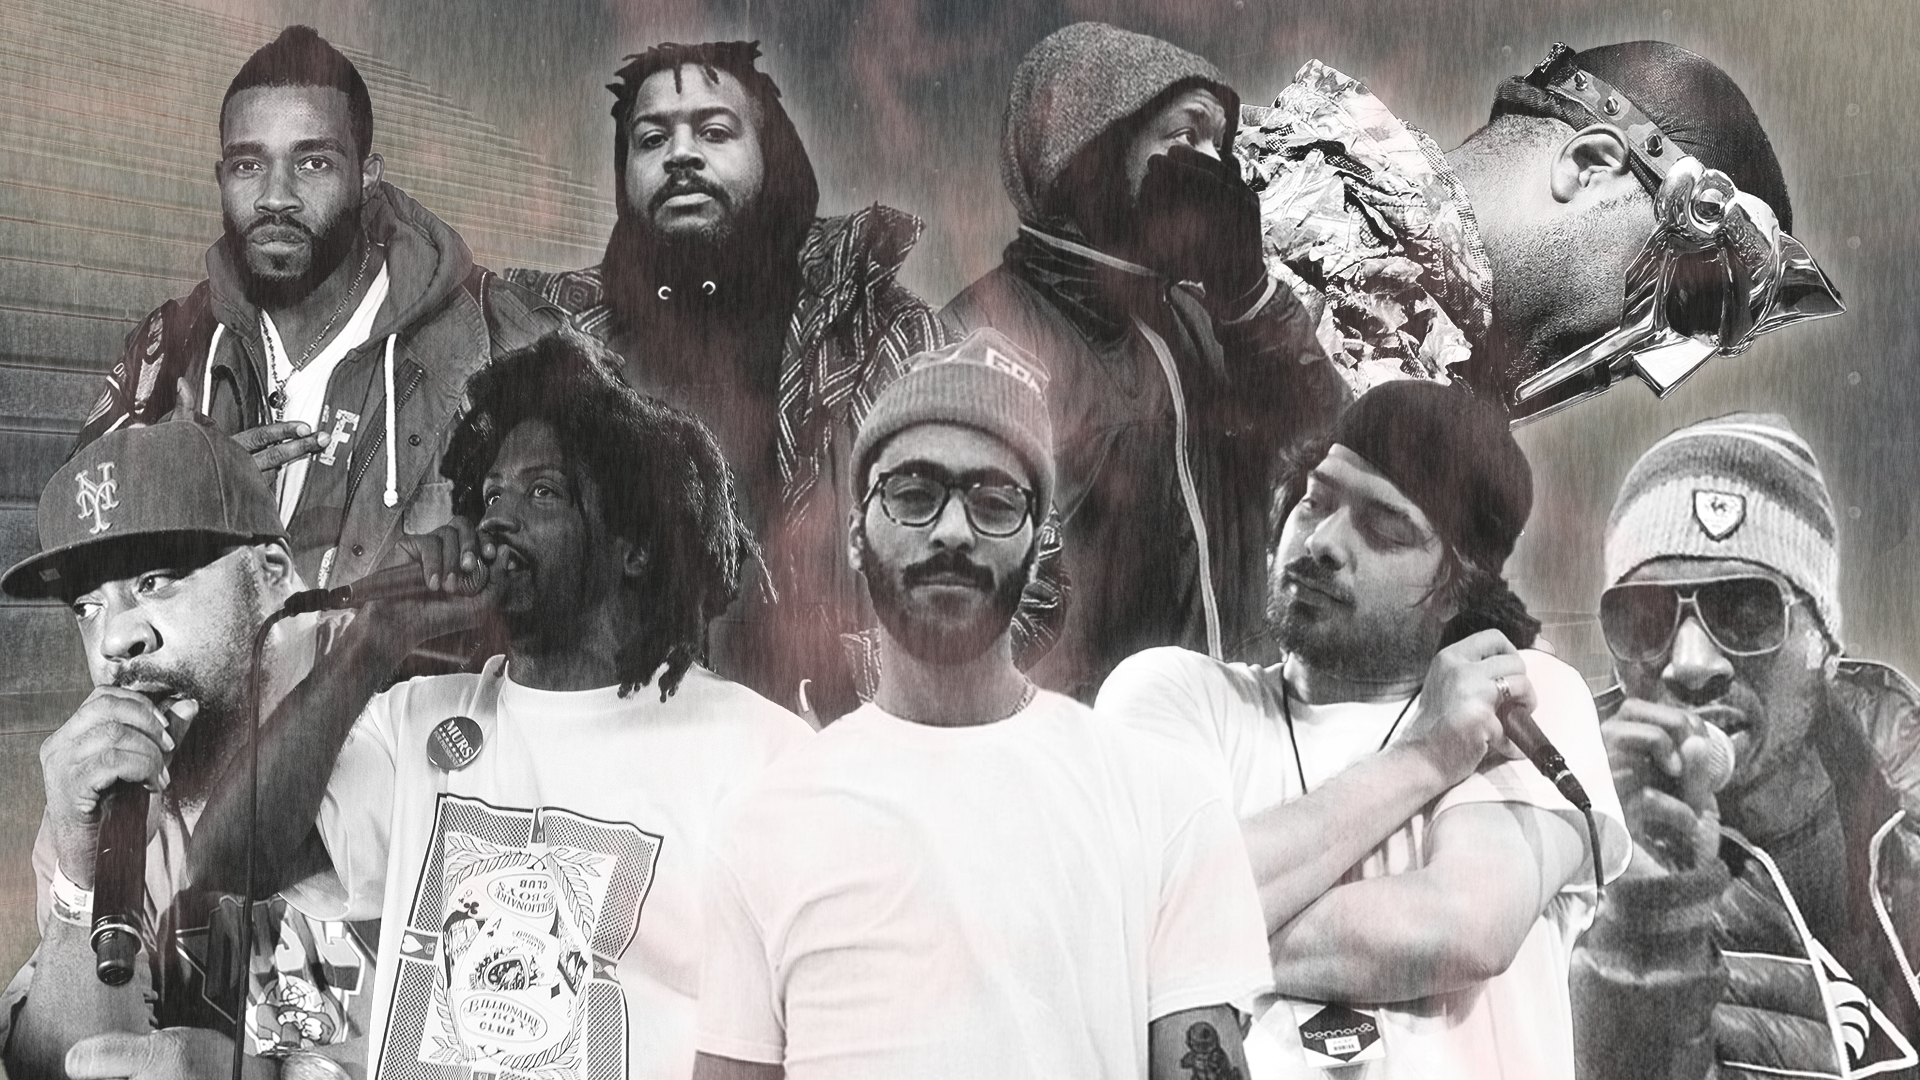 Download Rapper Kendrick Lamar In Aesthetic Wallpaper